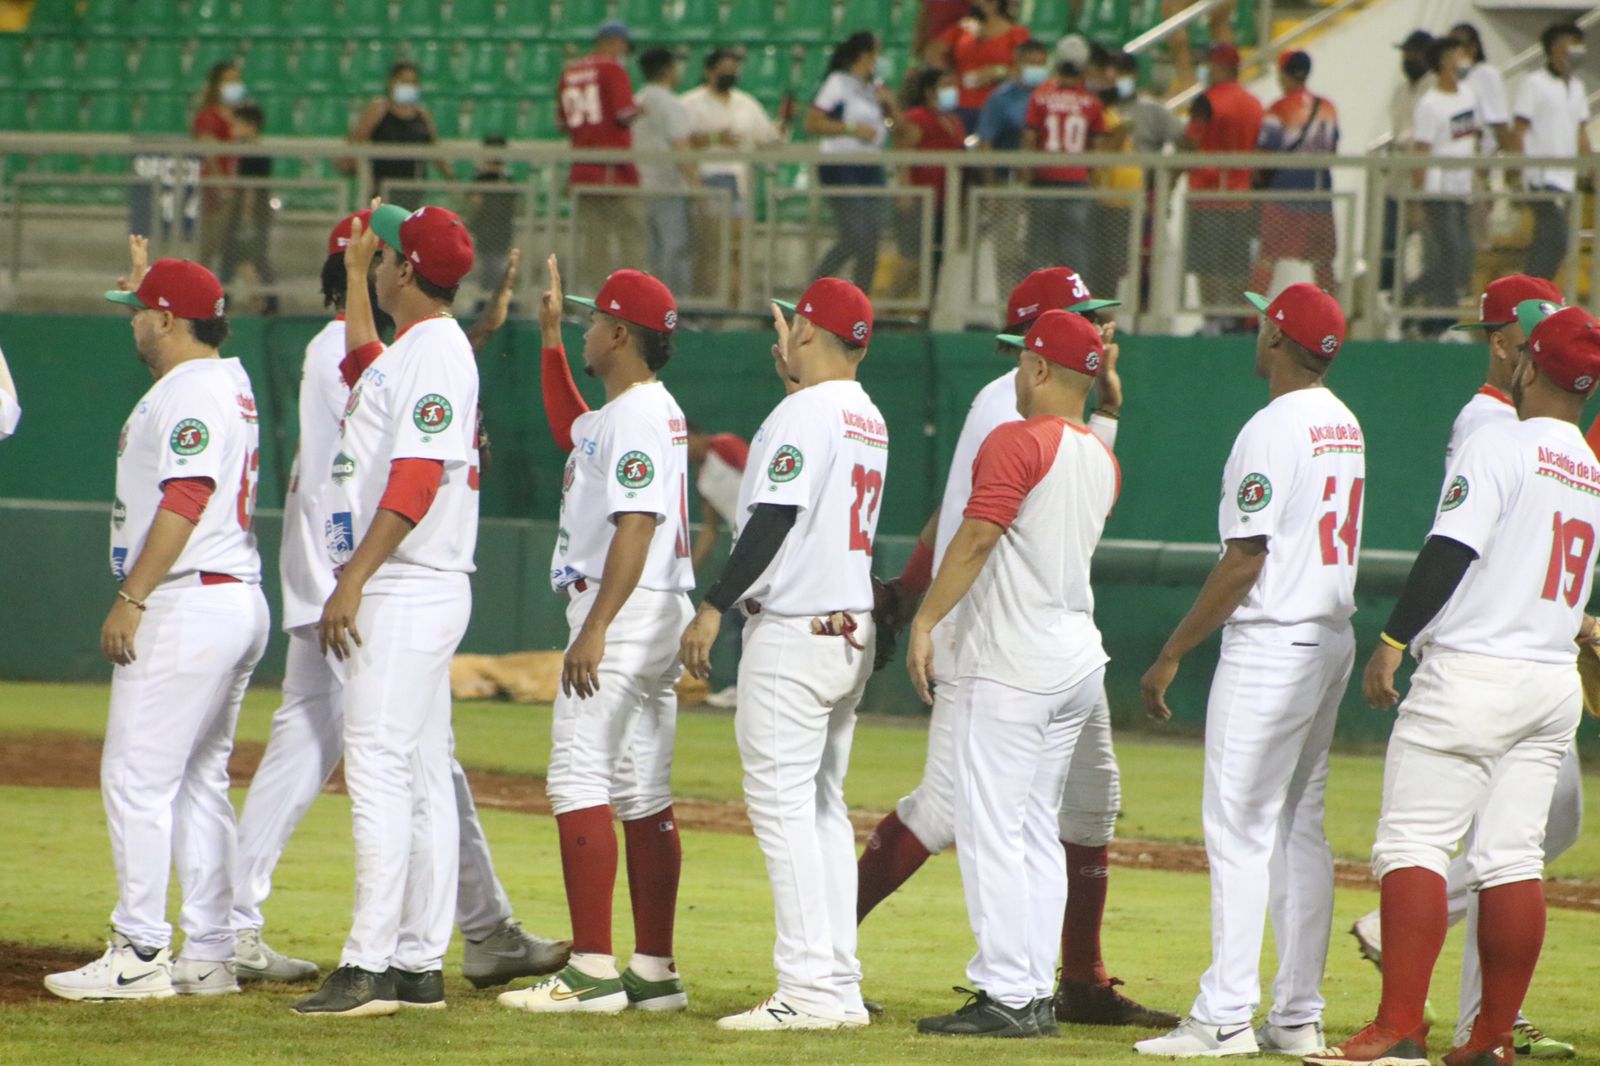 Ganan con paliza en debut de Jonathan Araúz : PANAMÁ PROBEIS - Asociación  Pro Béisbol de Panamá